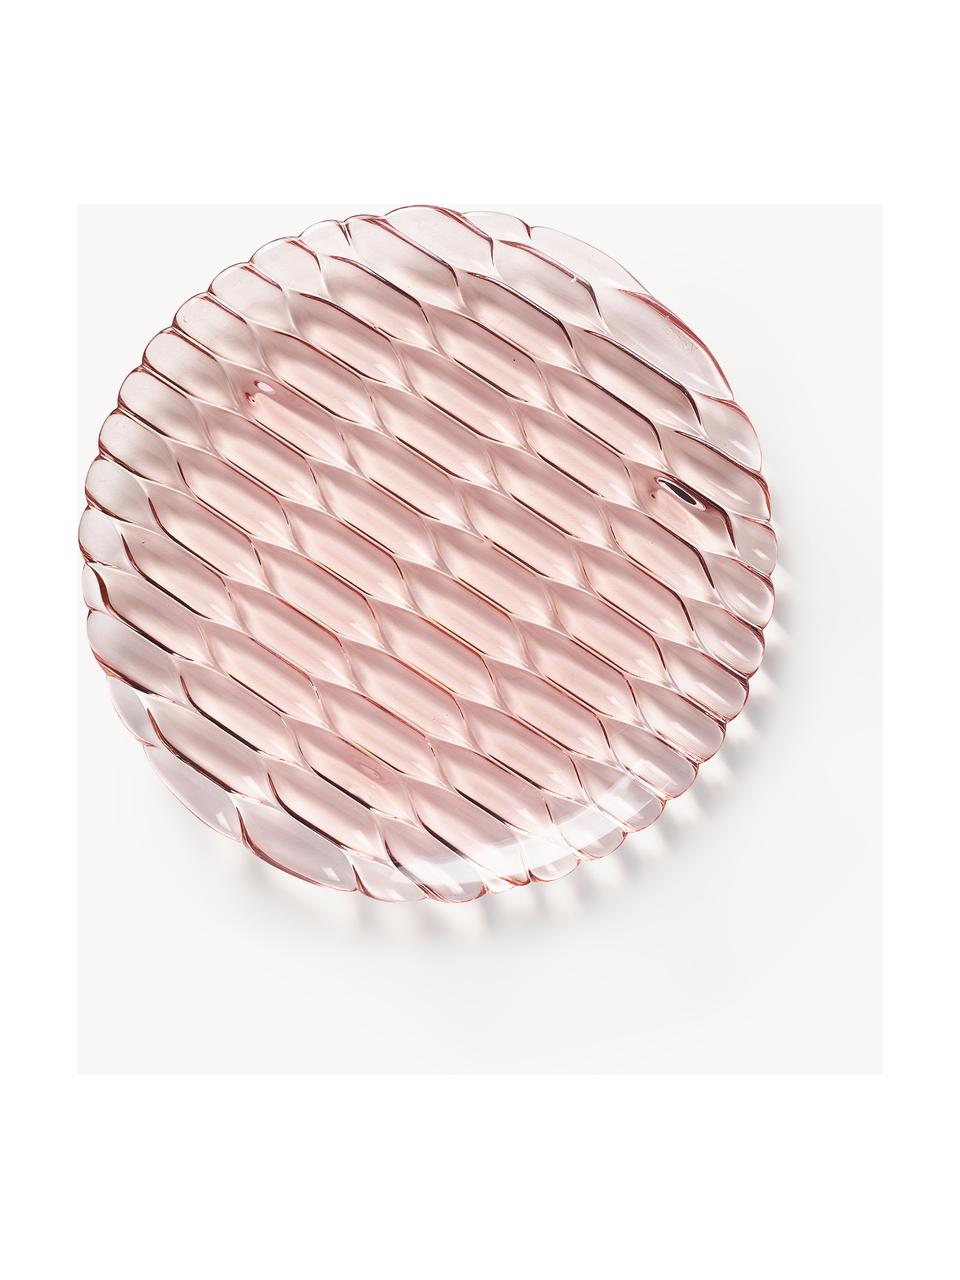 Raňajkové taniere so štruktúrovaným vzorom Jellies, 4 ks, Plast, Svetloružová, Ø 22 cm